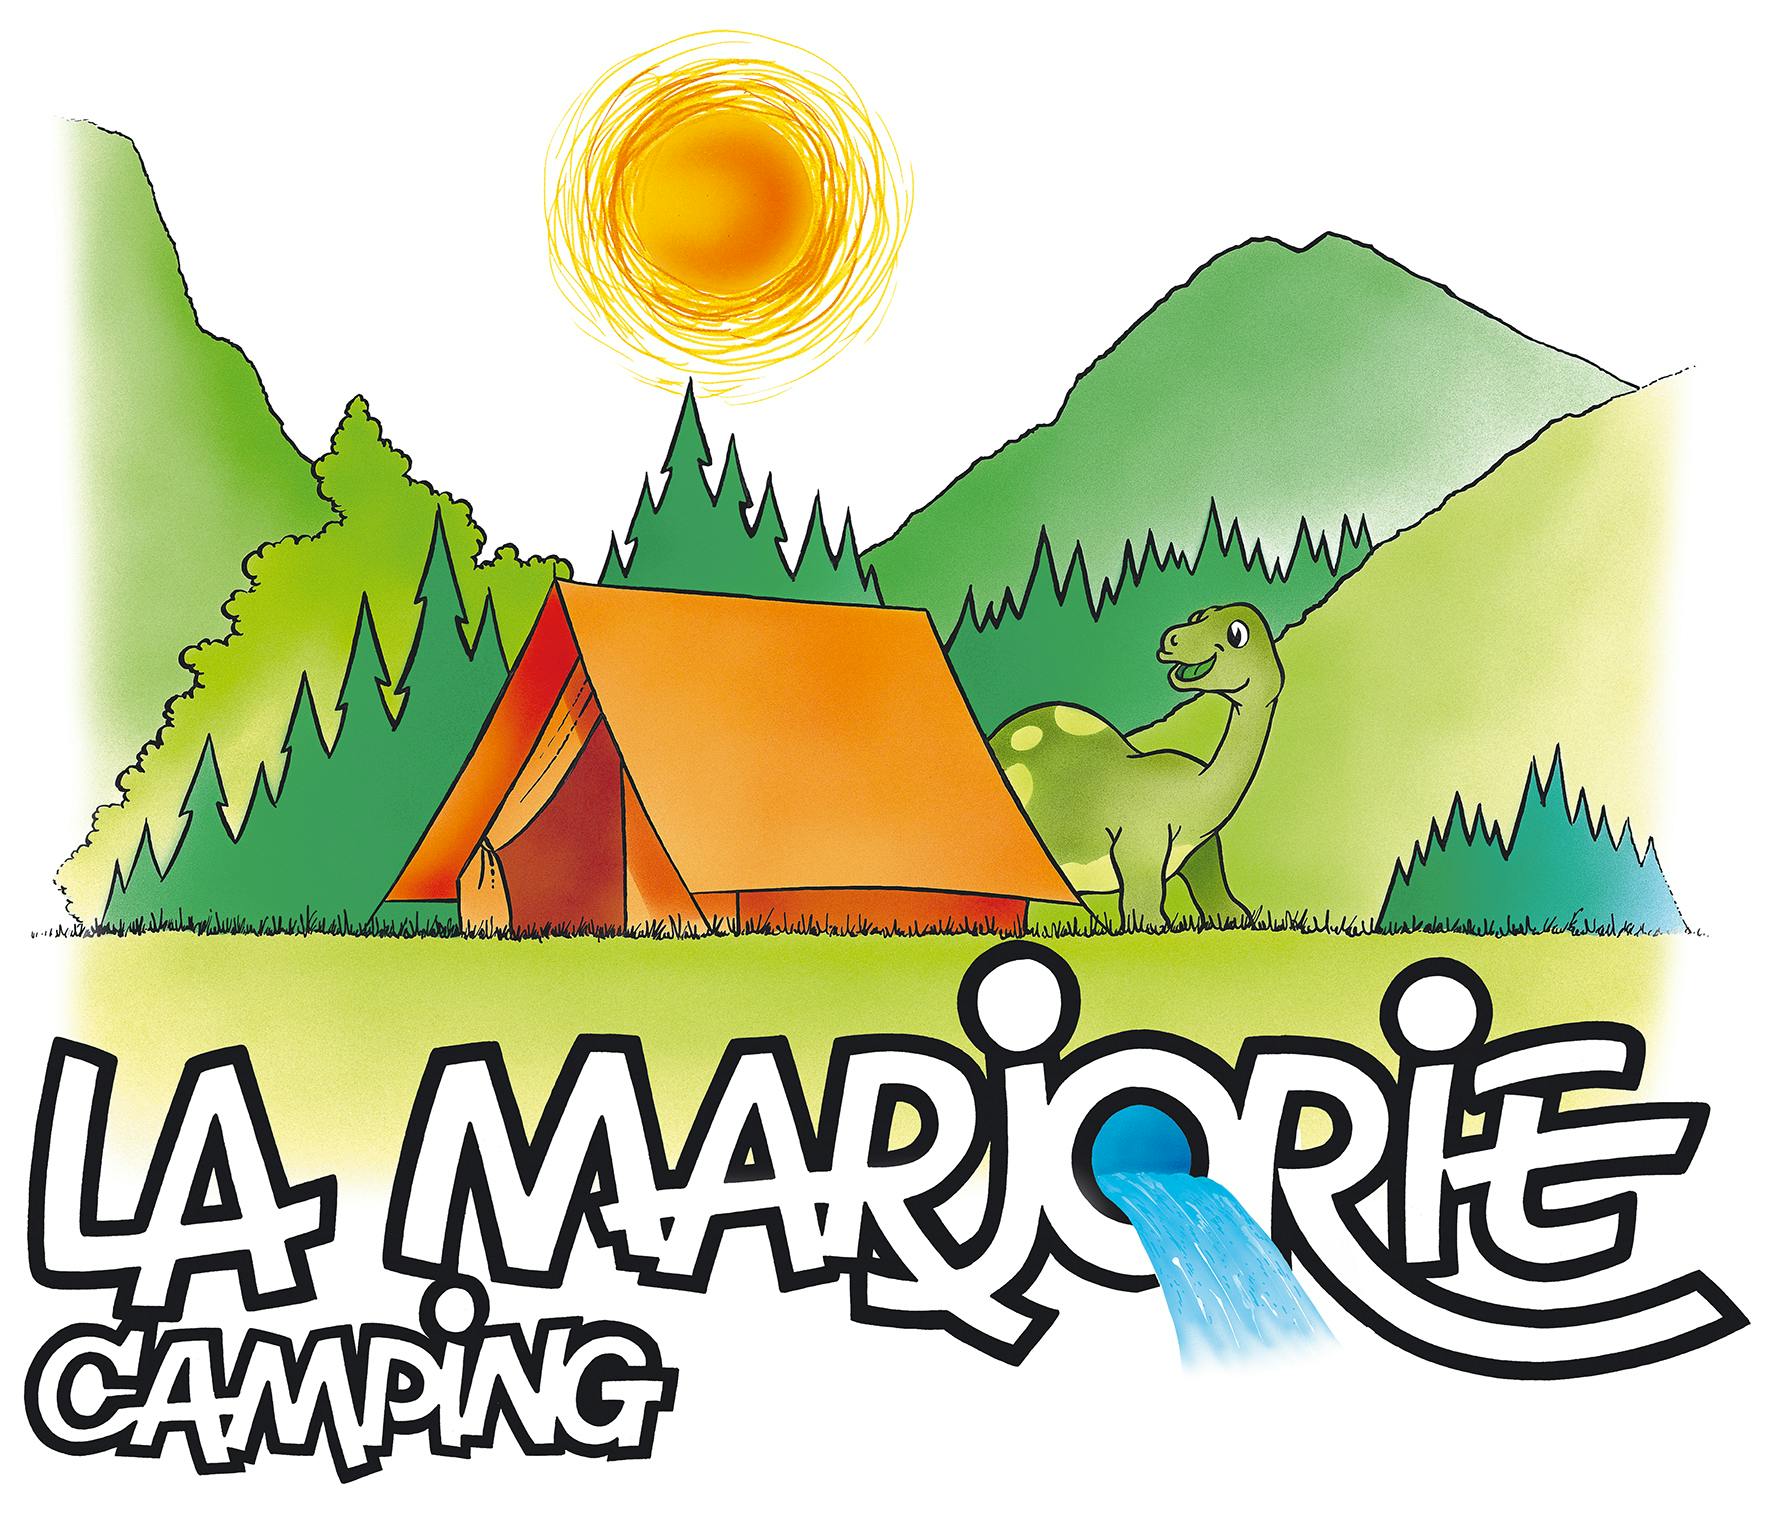 Camping La Marjorie